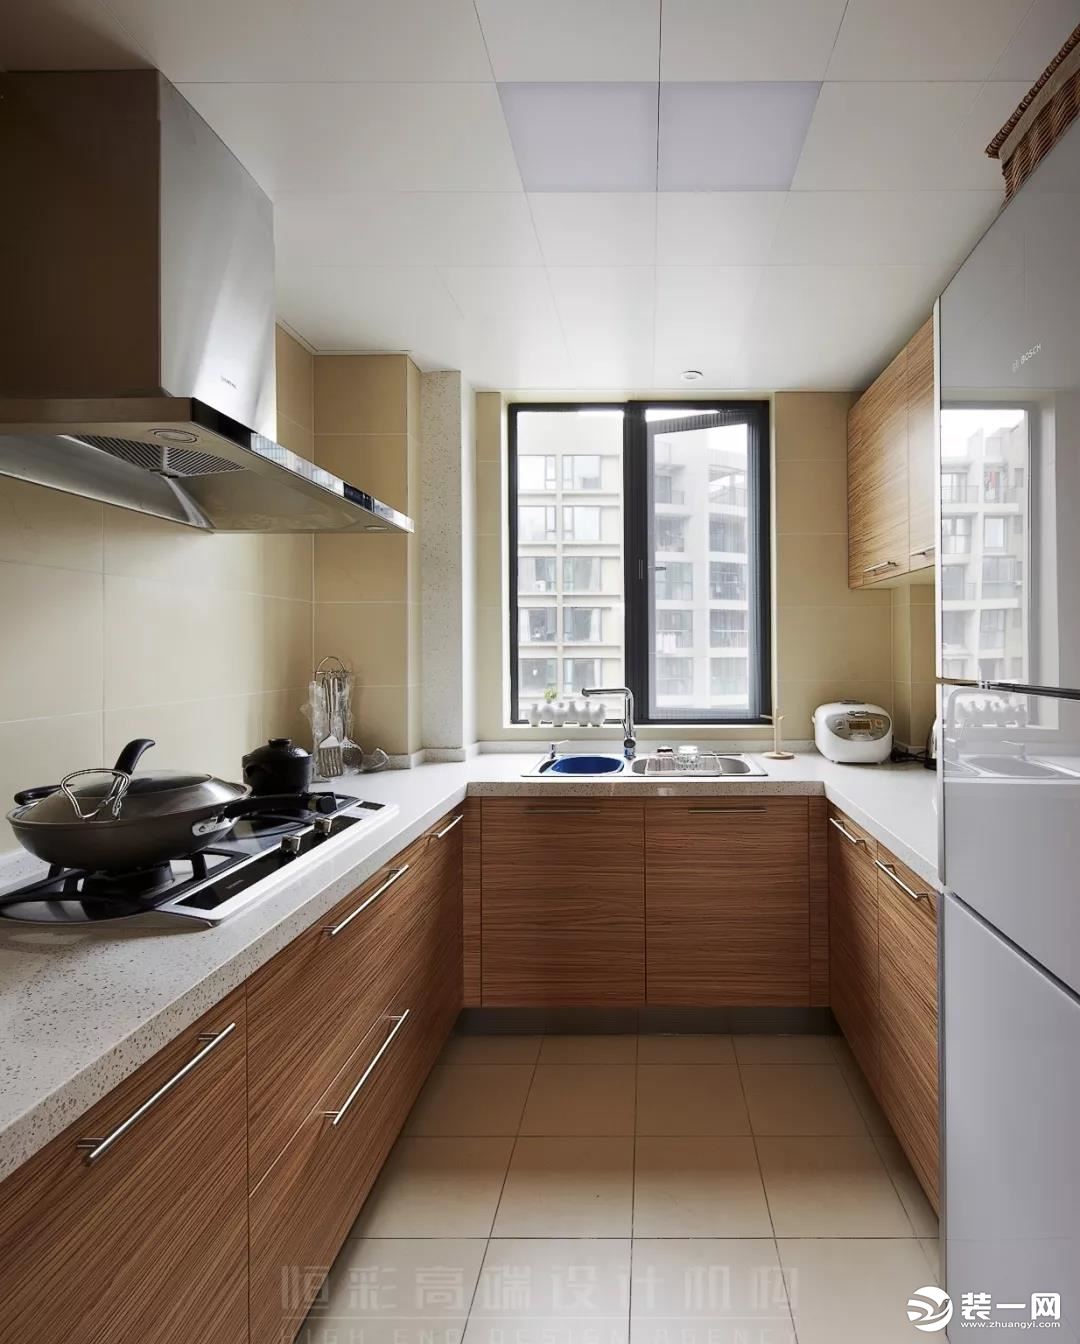 厨房和卫生间仍然使用了大量的原木色作为修饰，再搭配浅色营造出原始自然的感觉。